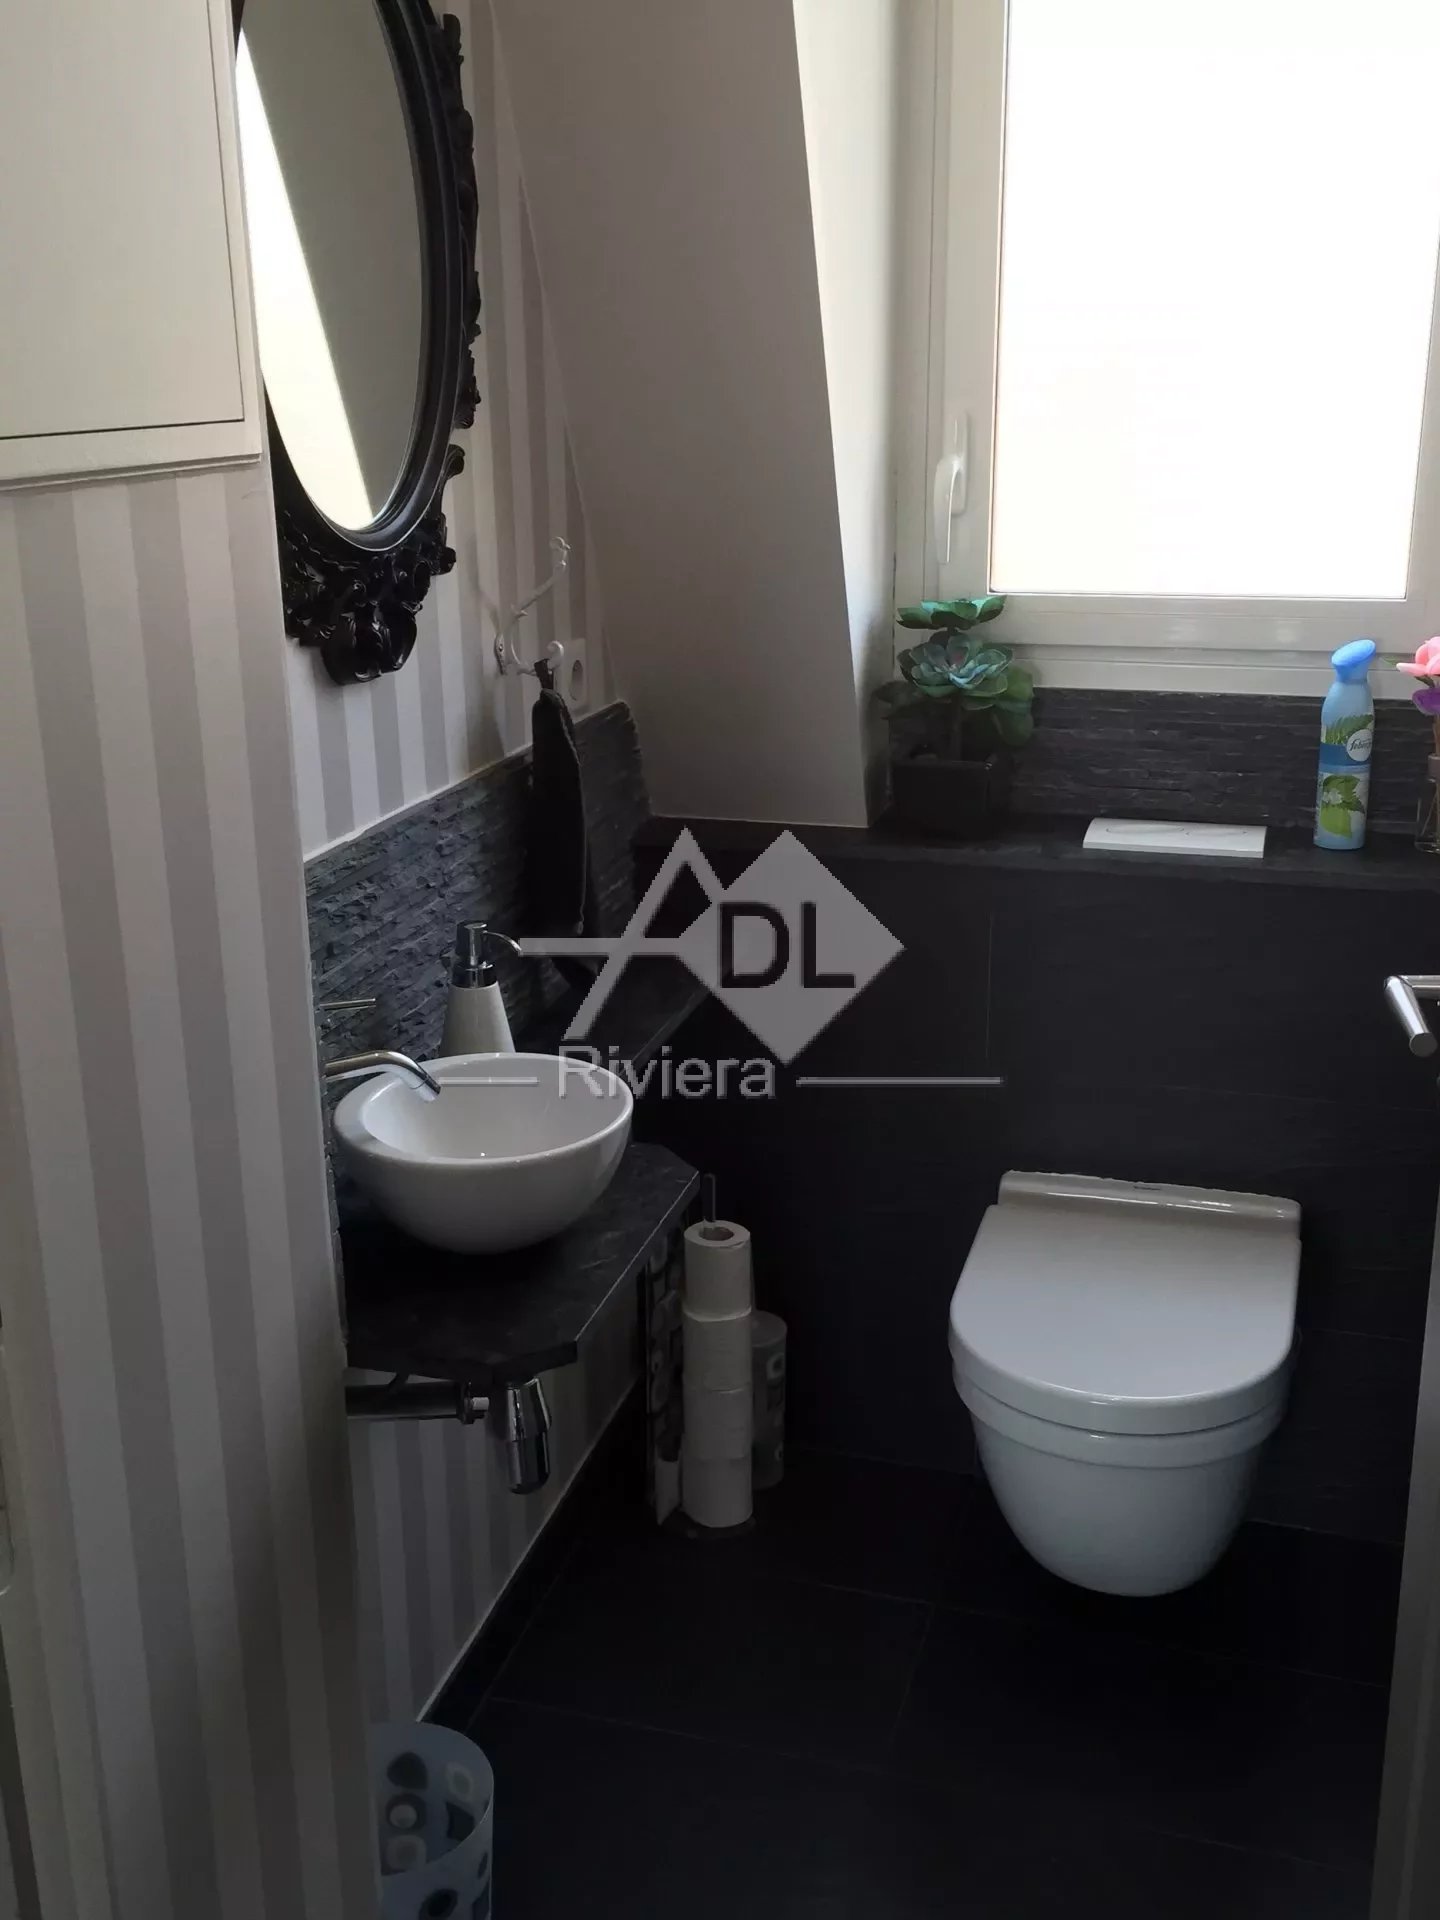 Vente Appartement 42m² 2 Pièces à Cannes (06400) - Adl Riviera